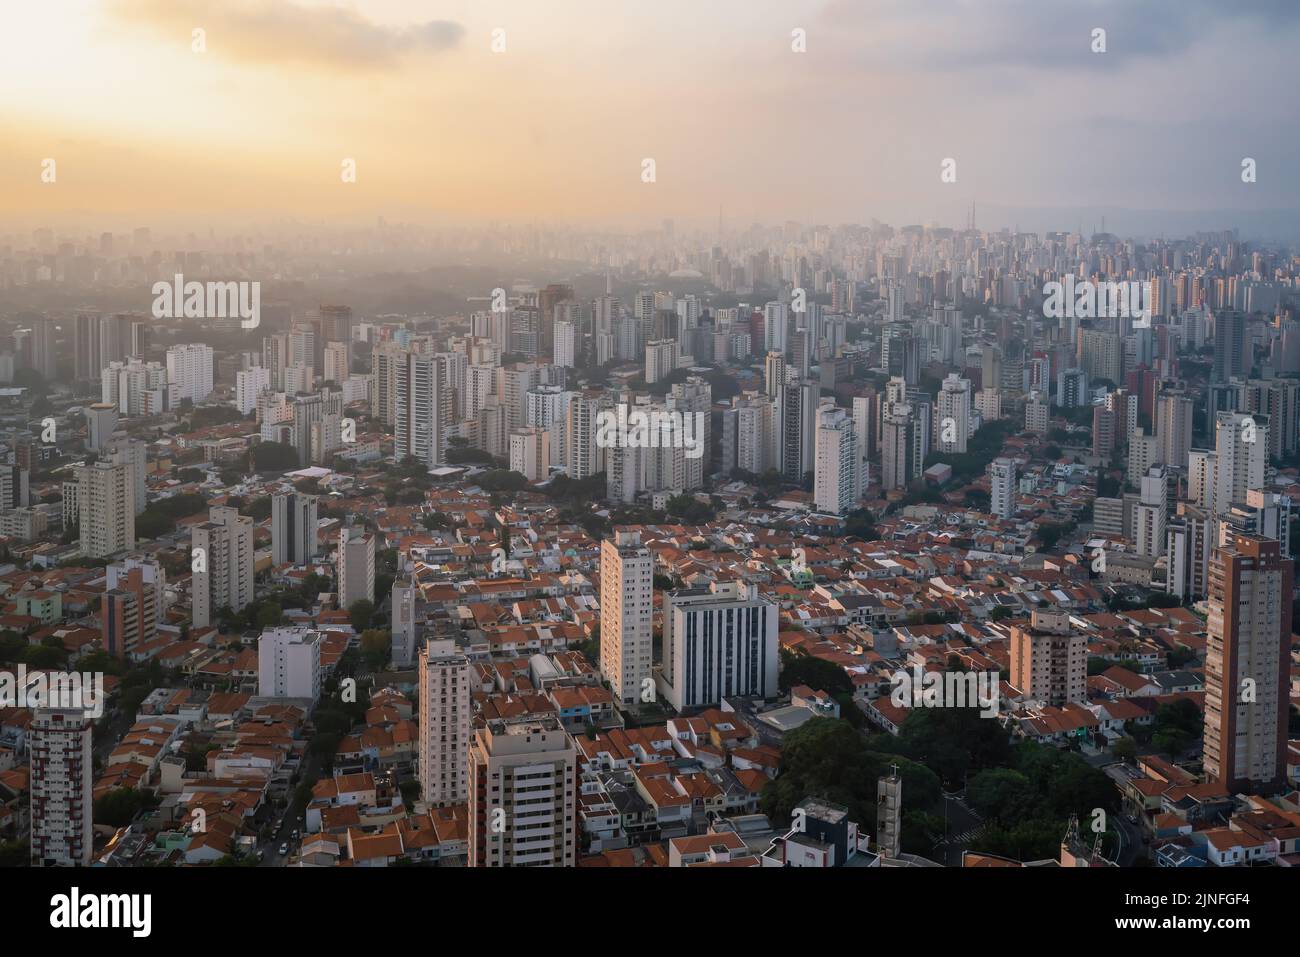 Aerial View of Mirandopolis neighborhood - Sao Paulo, Brazil Stock Photo